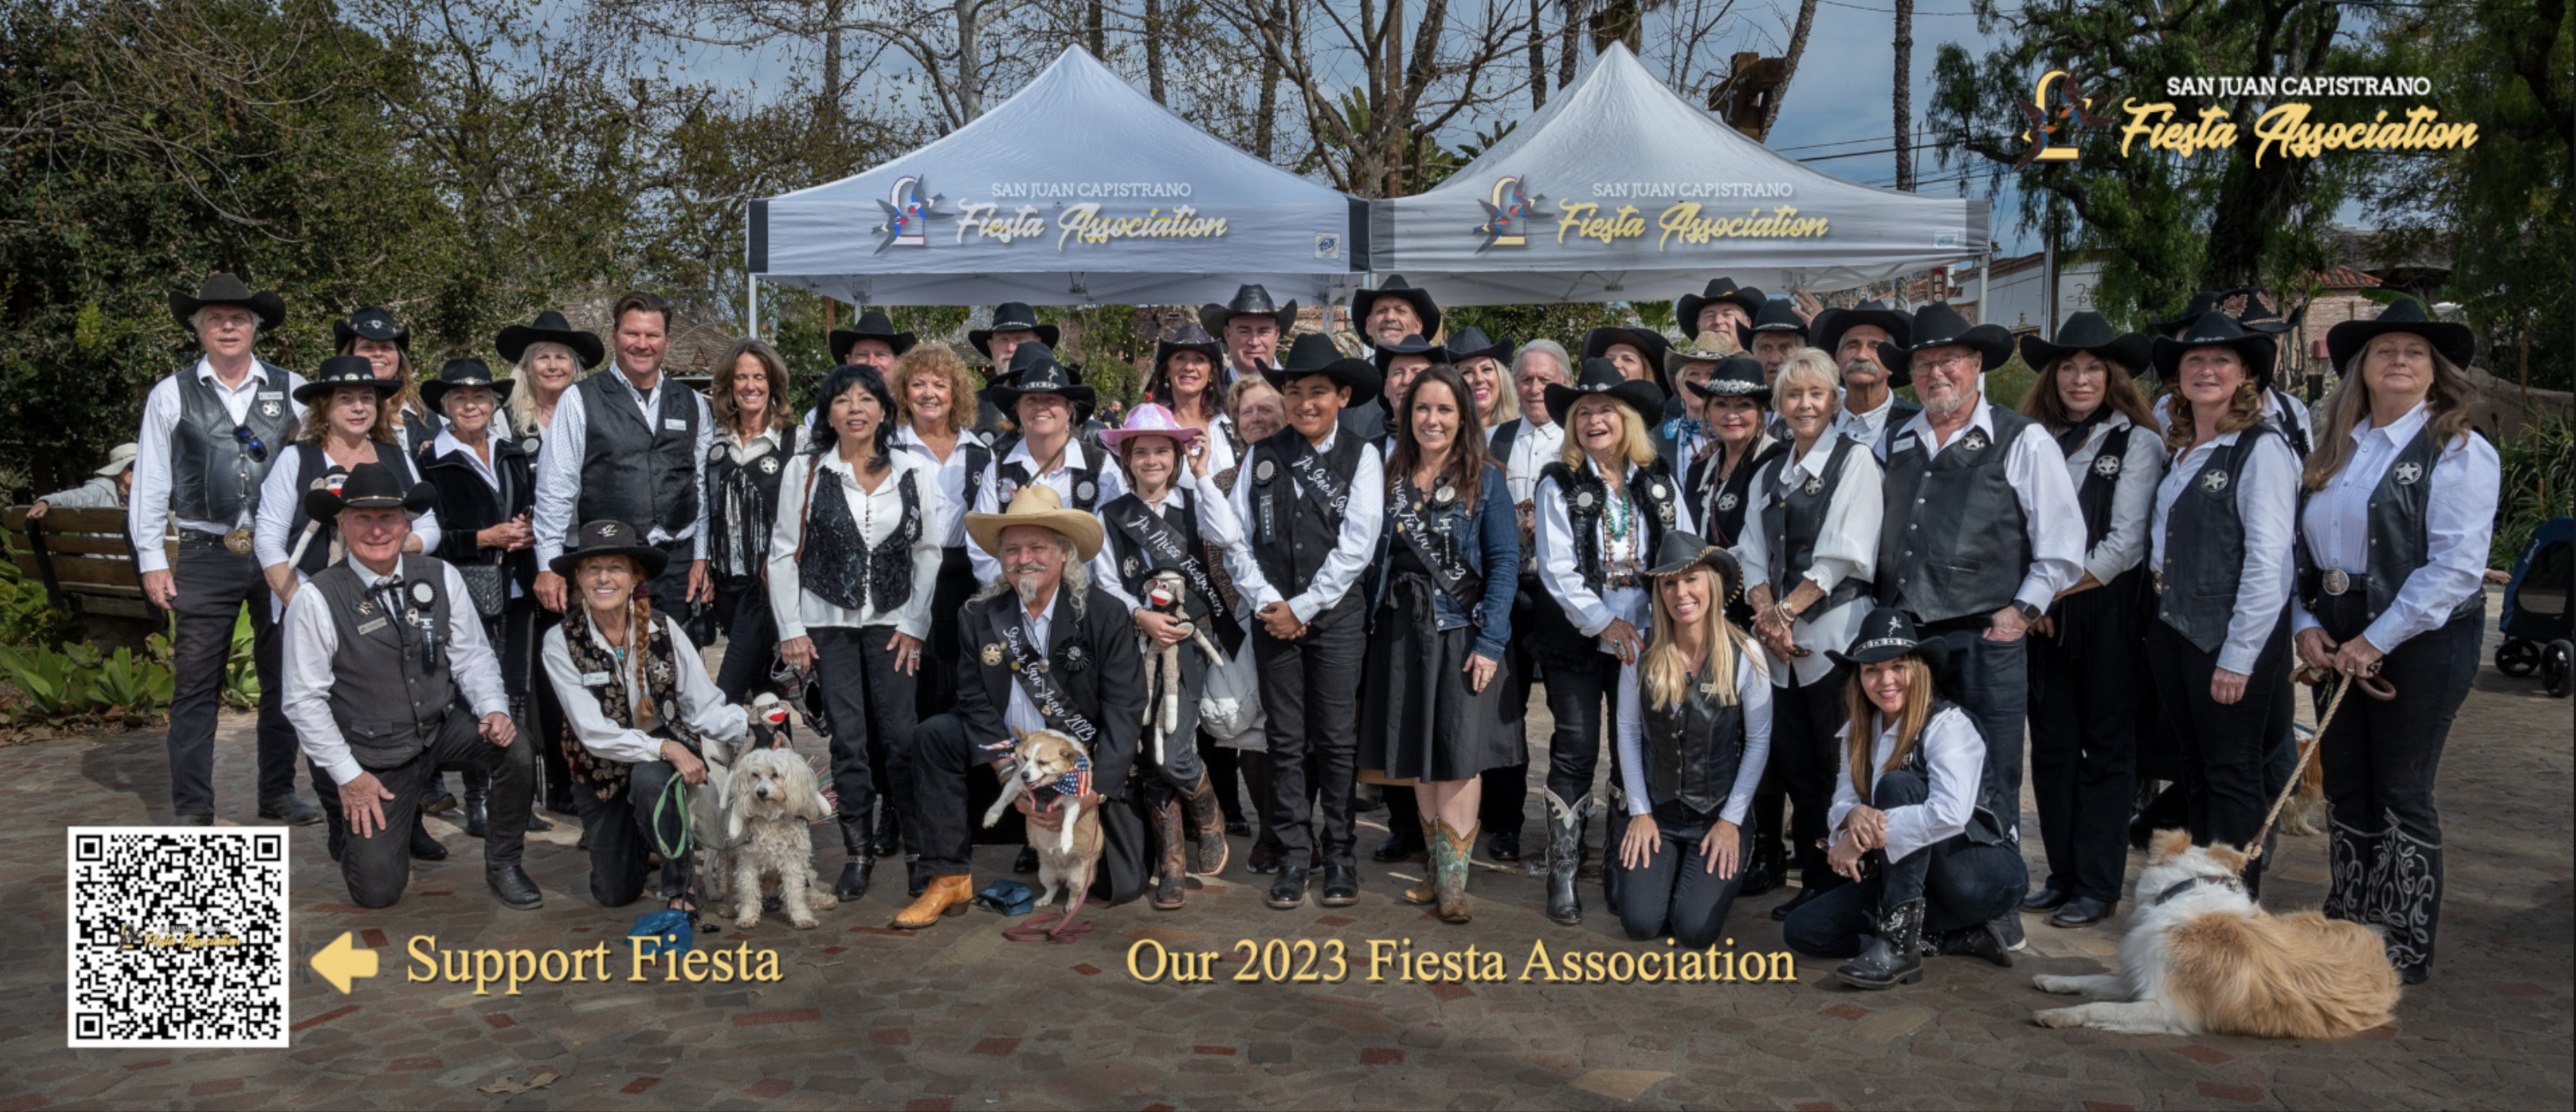 Fiesta Association 2023